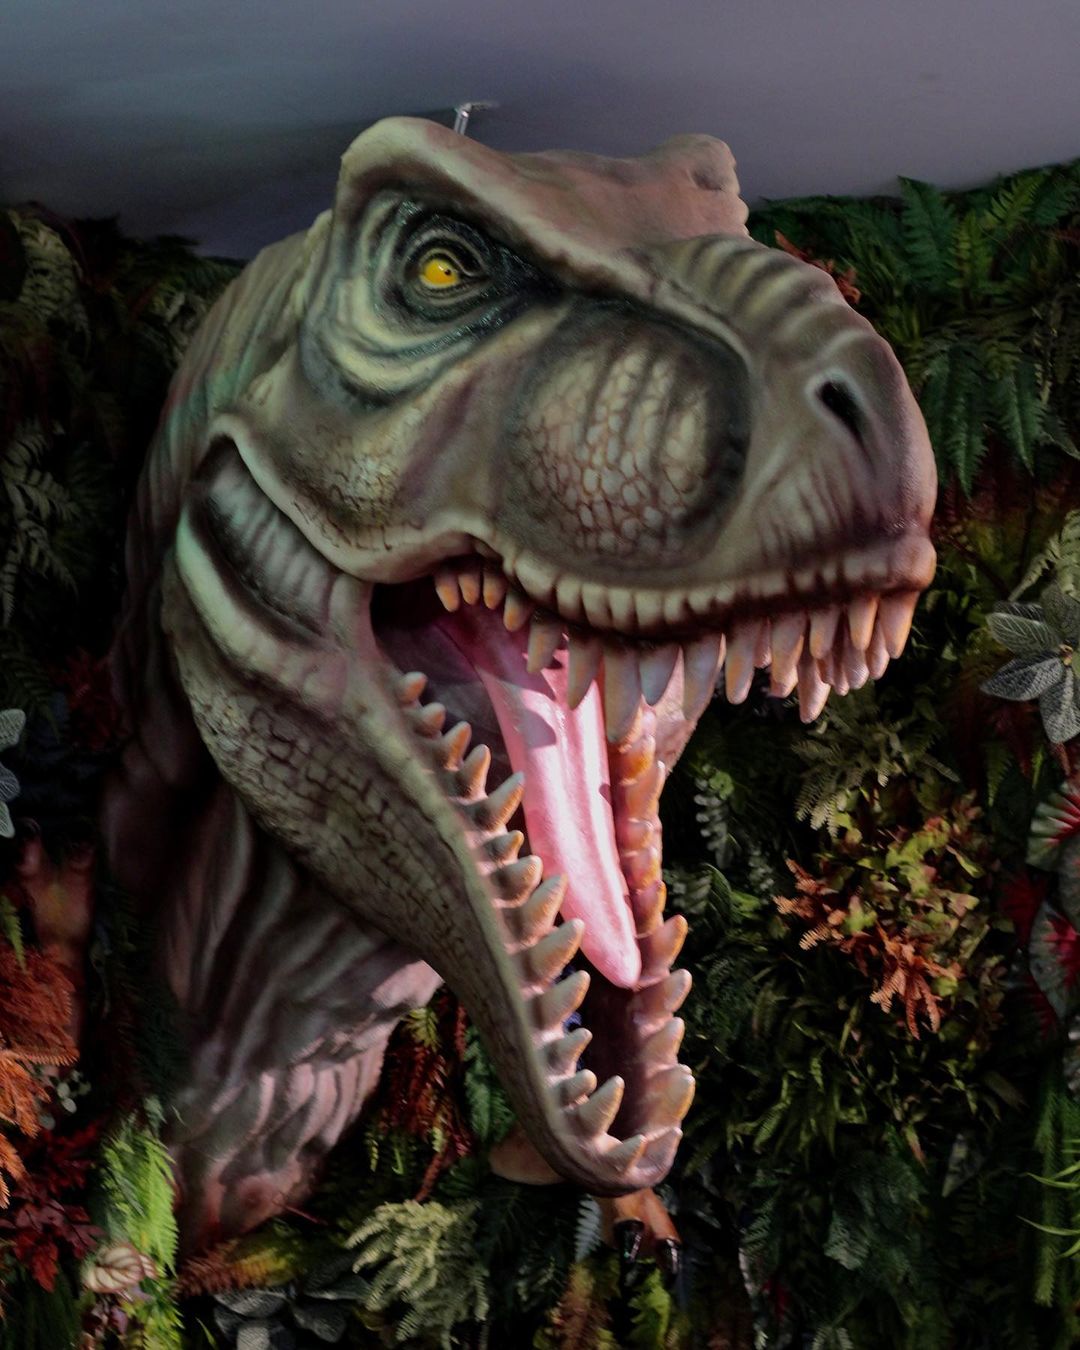 Convites A festa de aniversário T-Rex Dino da escavação do